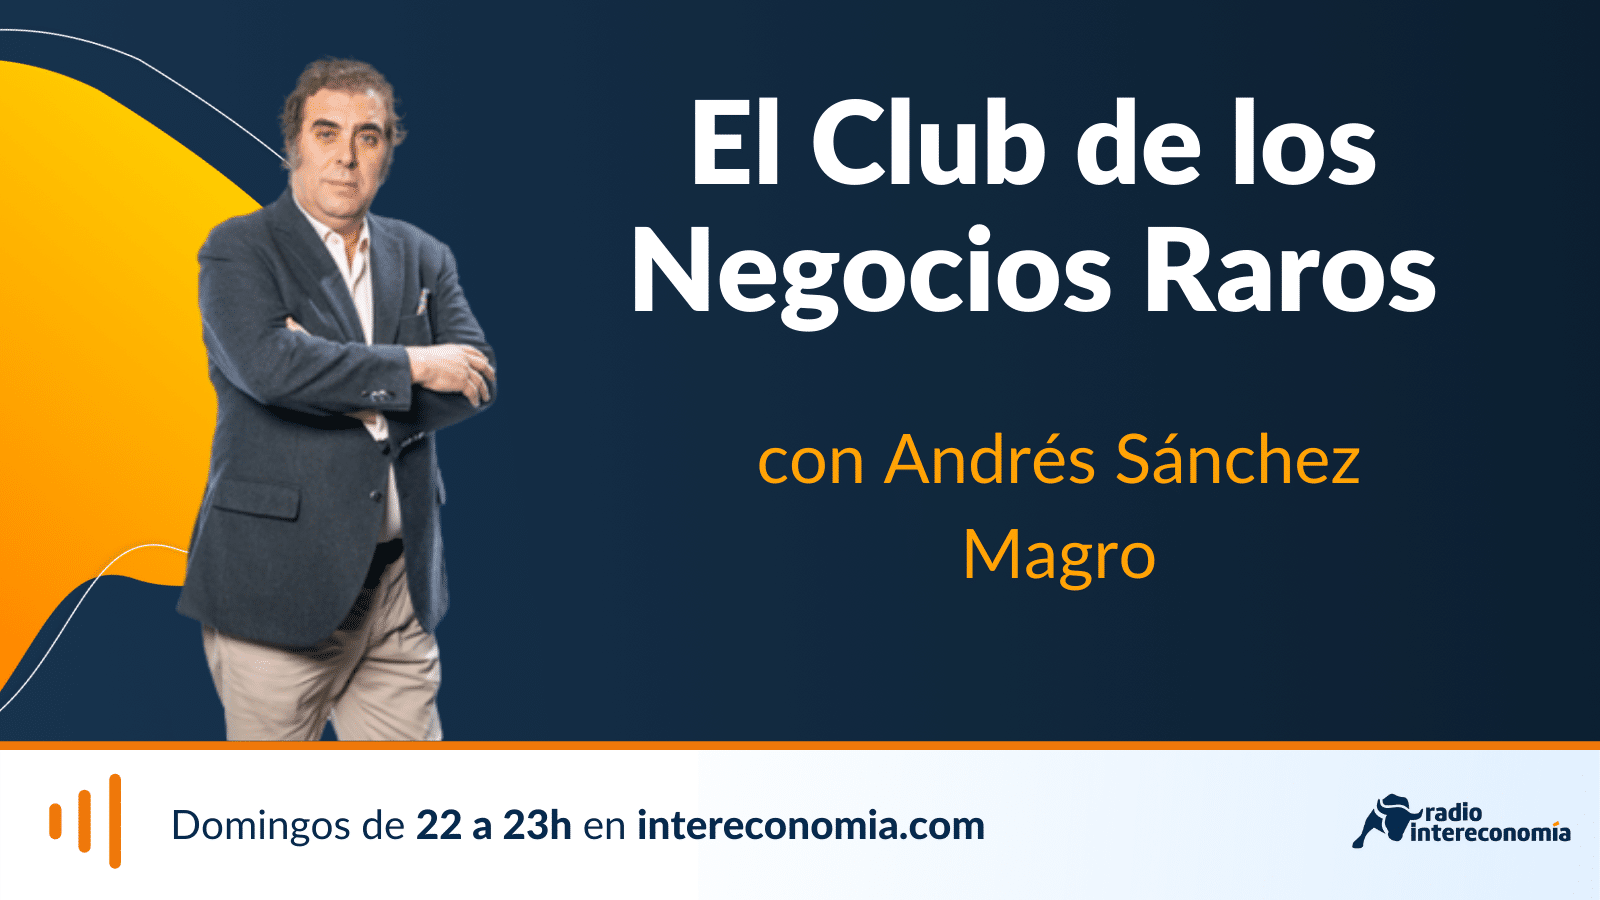 El Club de los Negocios Raros, Descampados, de Manuel Calderón 02/04/2023